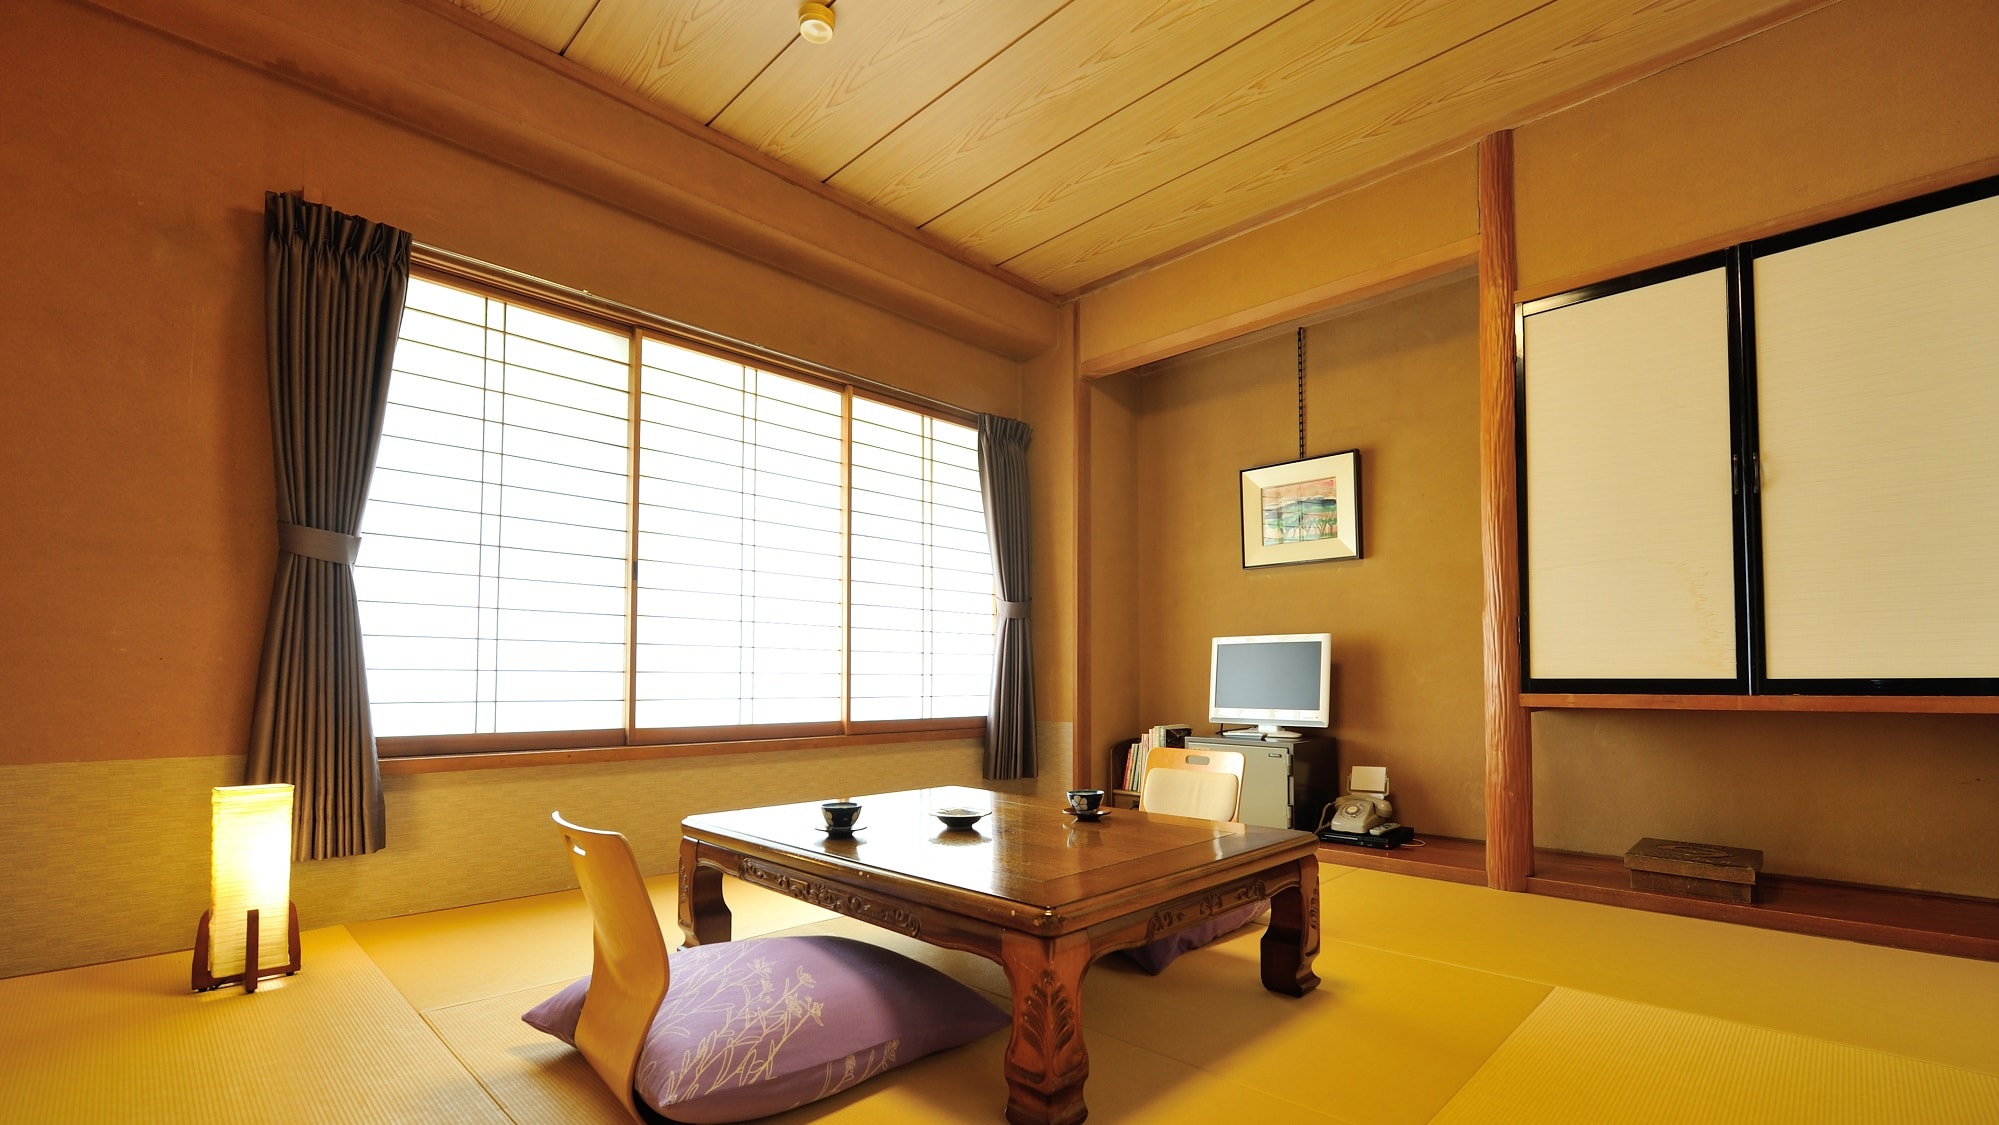 Yubatakan 8 tatami room (example)